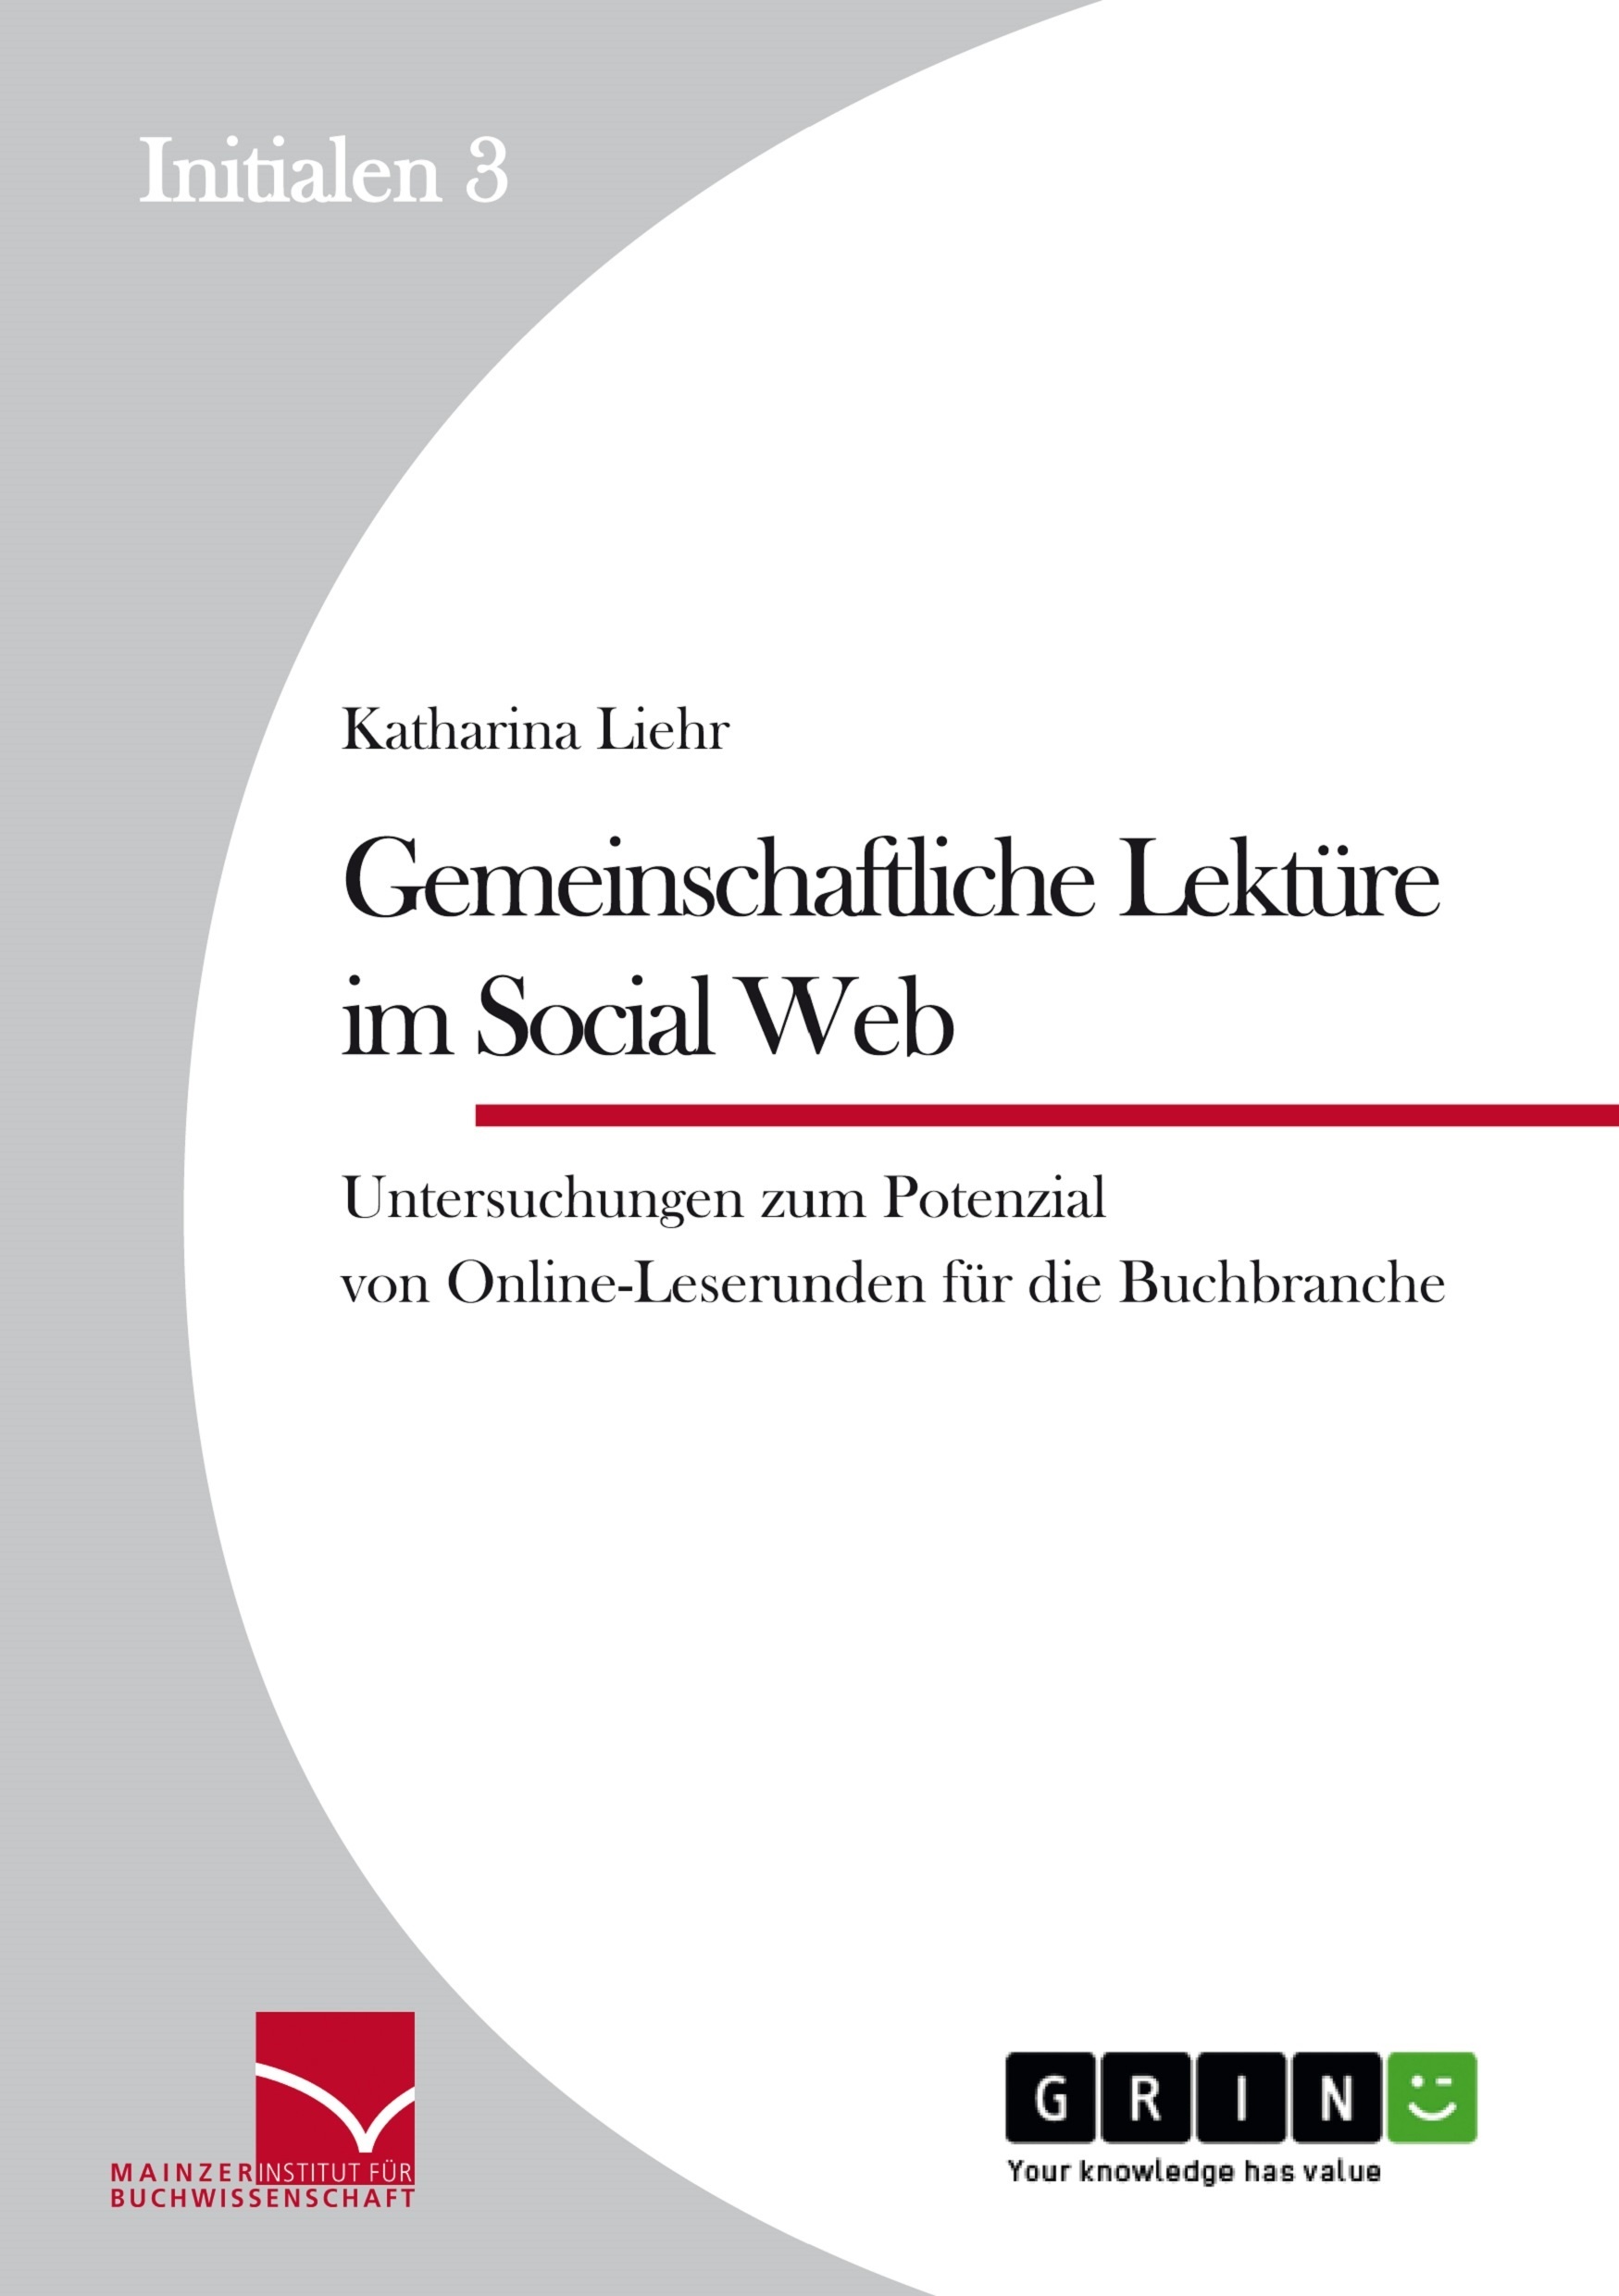 Título: Gemeinschaftliche Lektüre im Social Web